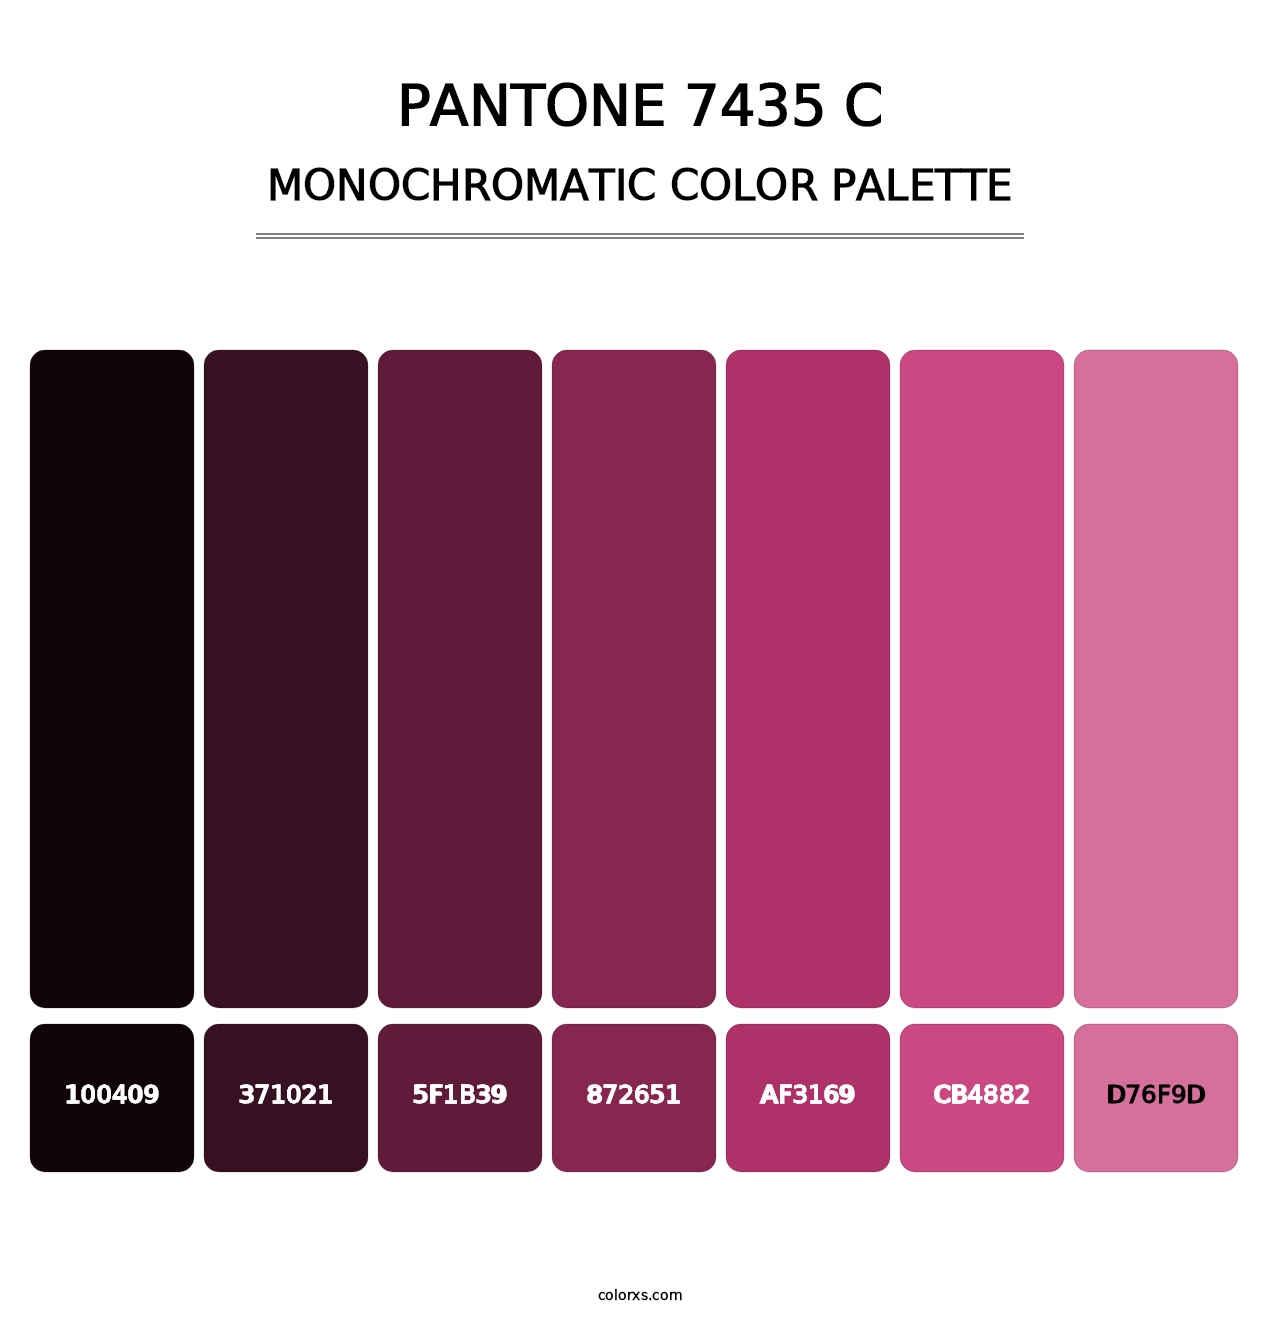 PANTONE 7435 C - Monochromatic Color Palette